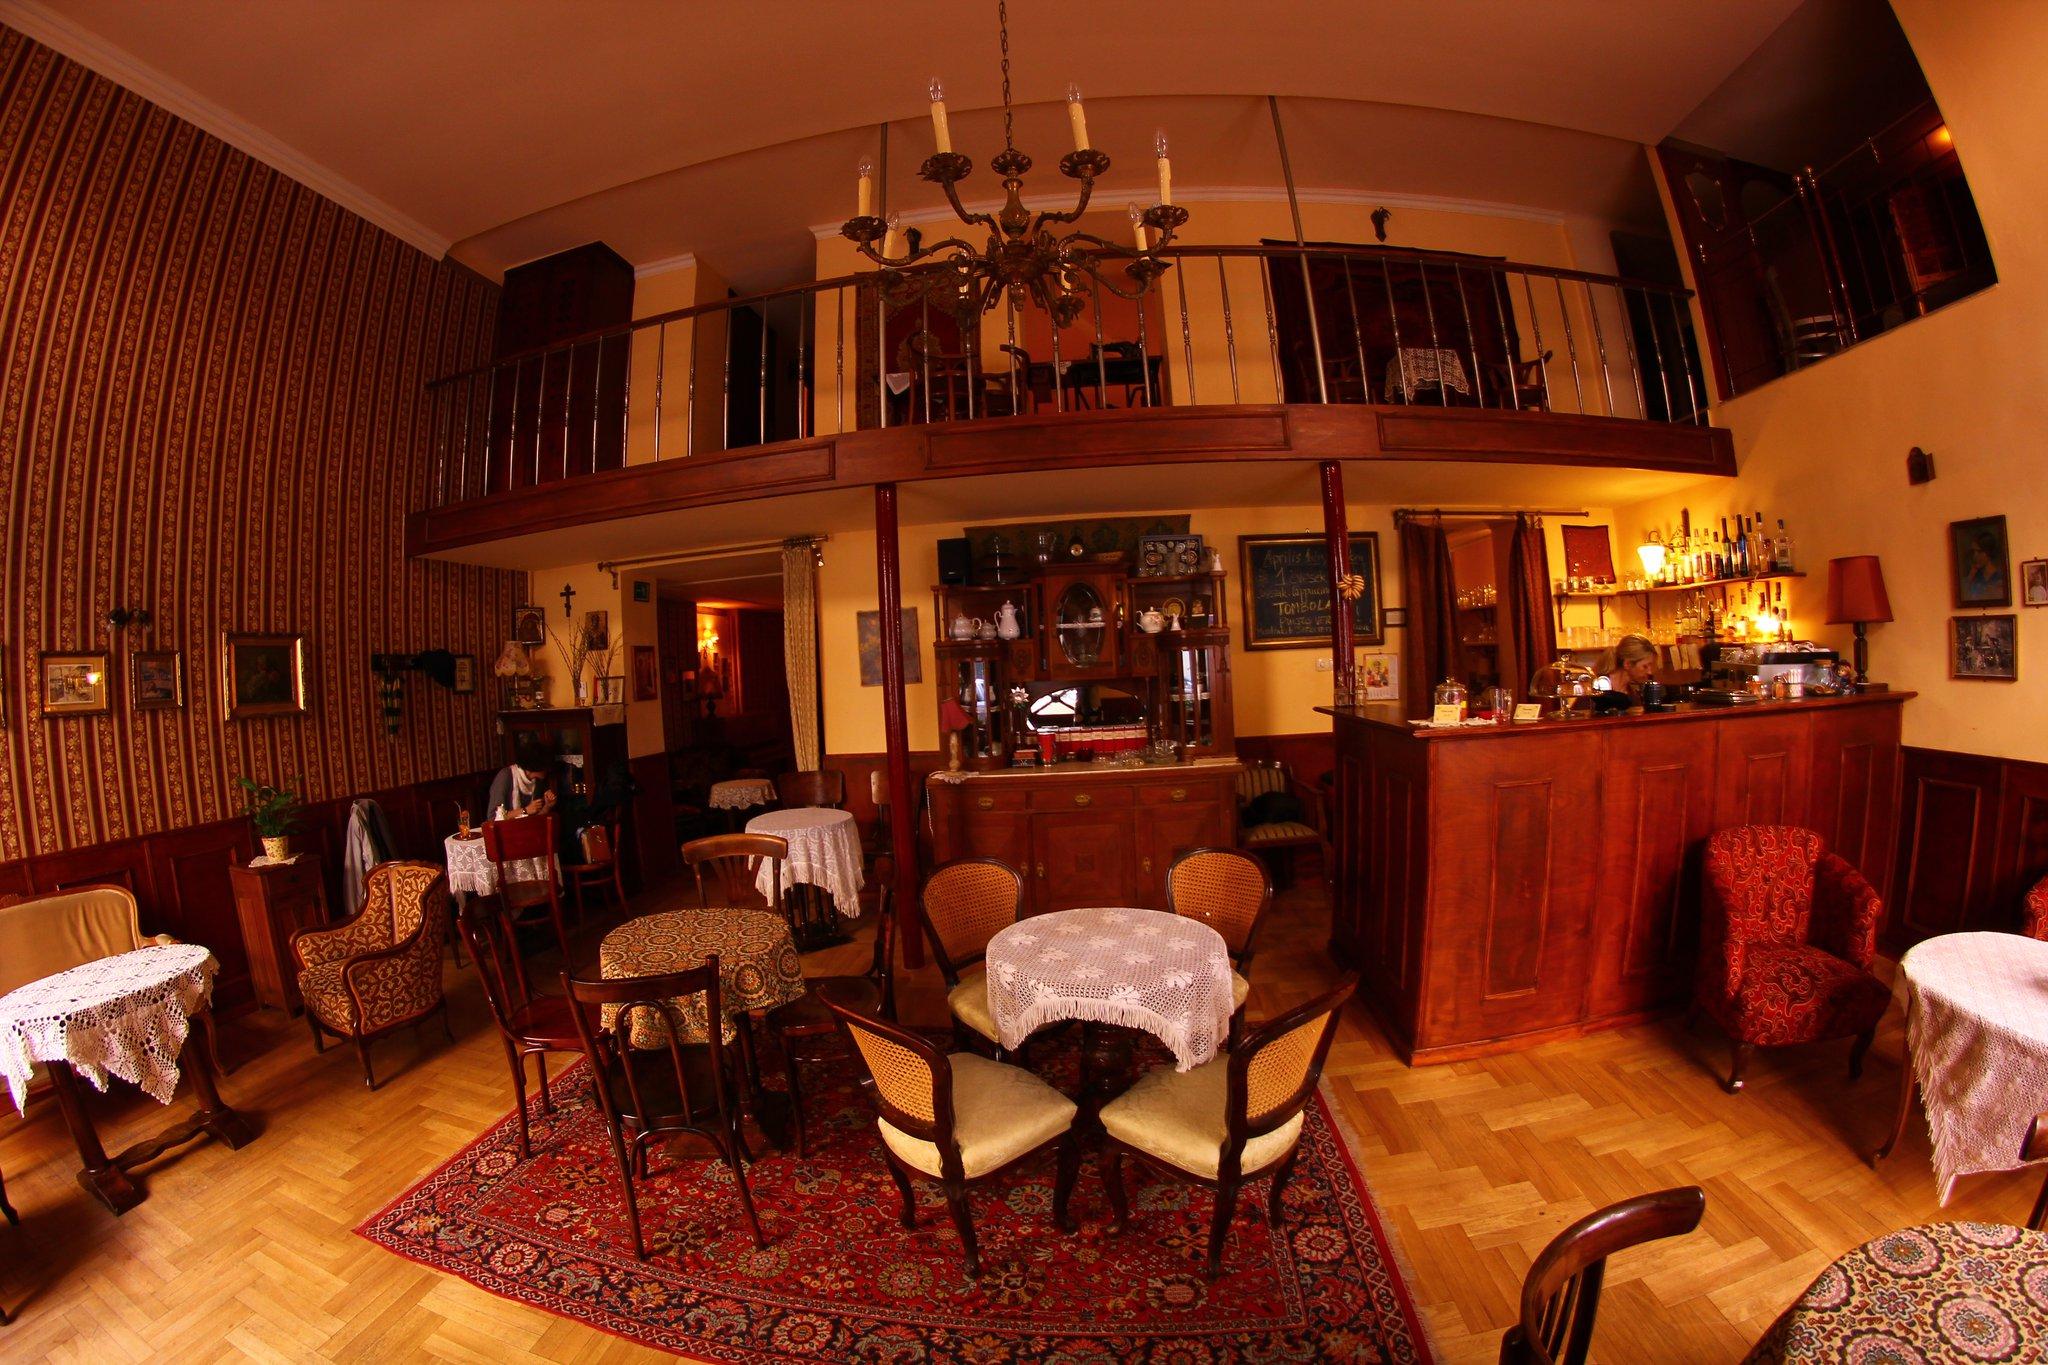 Cover image of this place Café Zsivágó